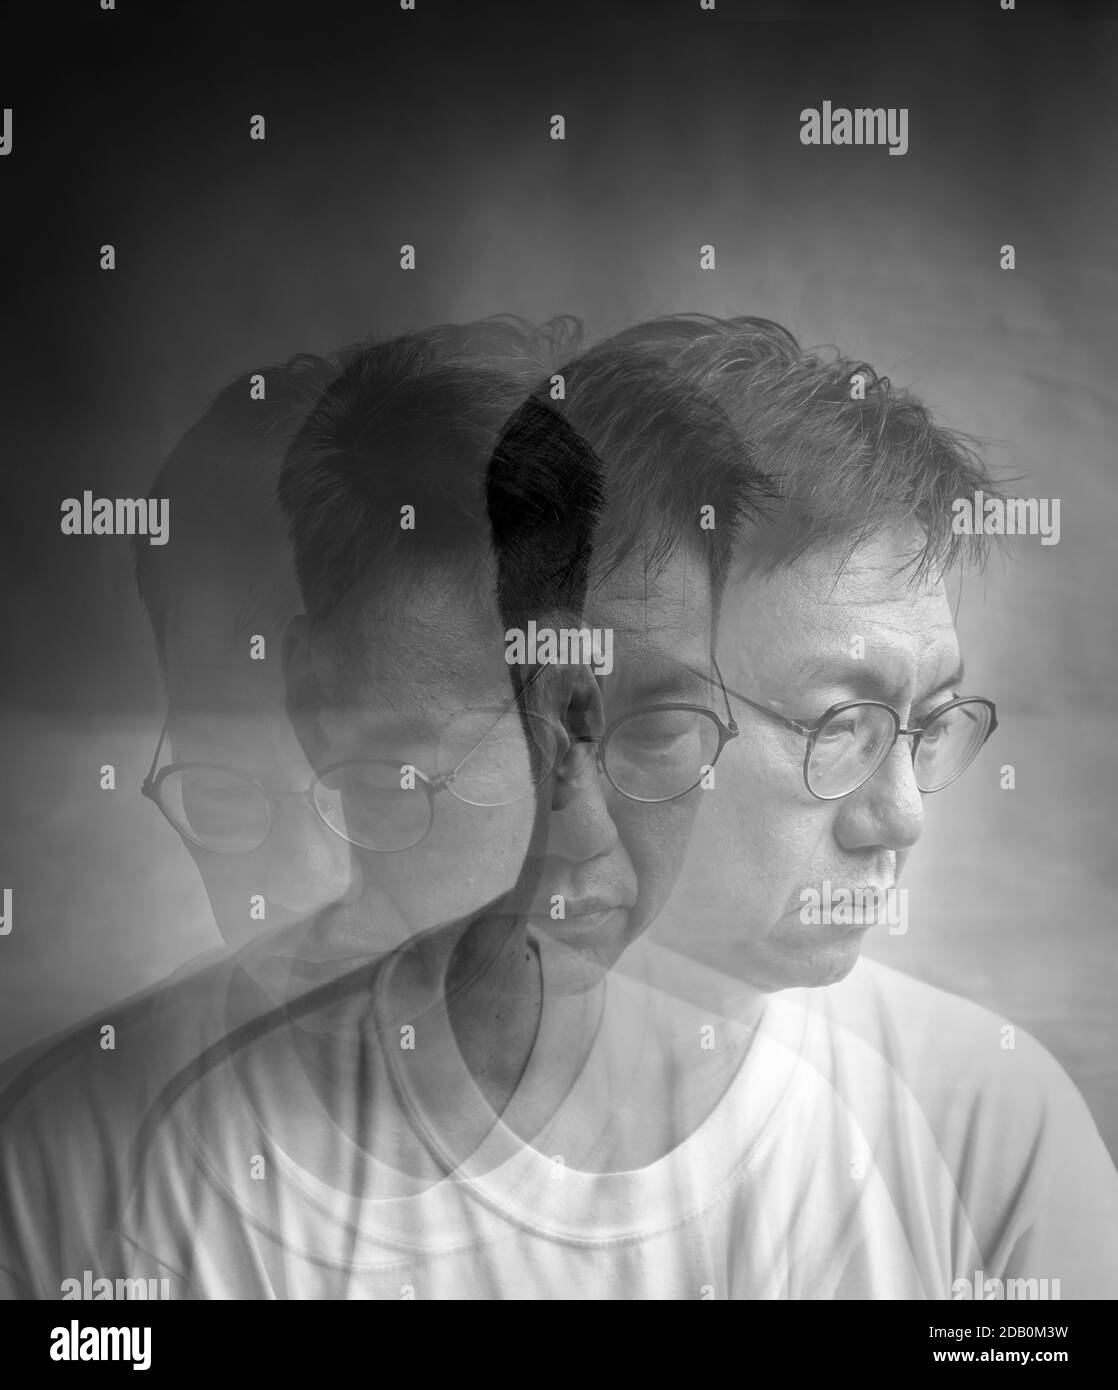 Psychische Gesundheit Konzept, Mischen drei Fotos von einem traurig aussehenden Mann, um Stimmung von Depression oder bipolar zu vermitteln Stockfoto